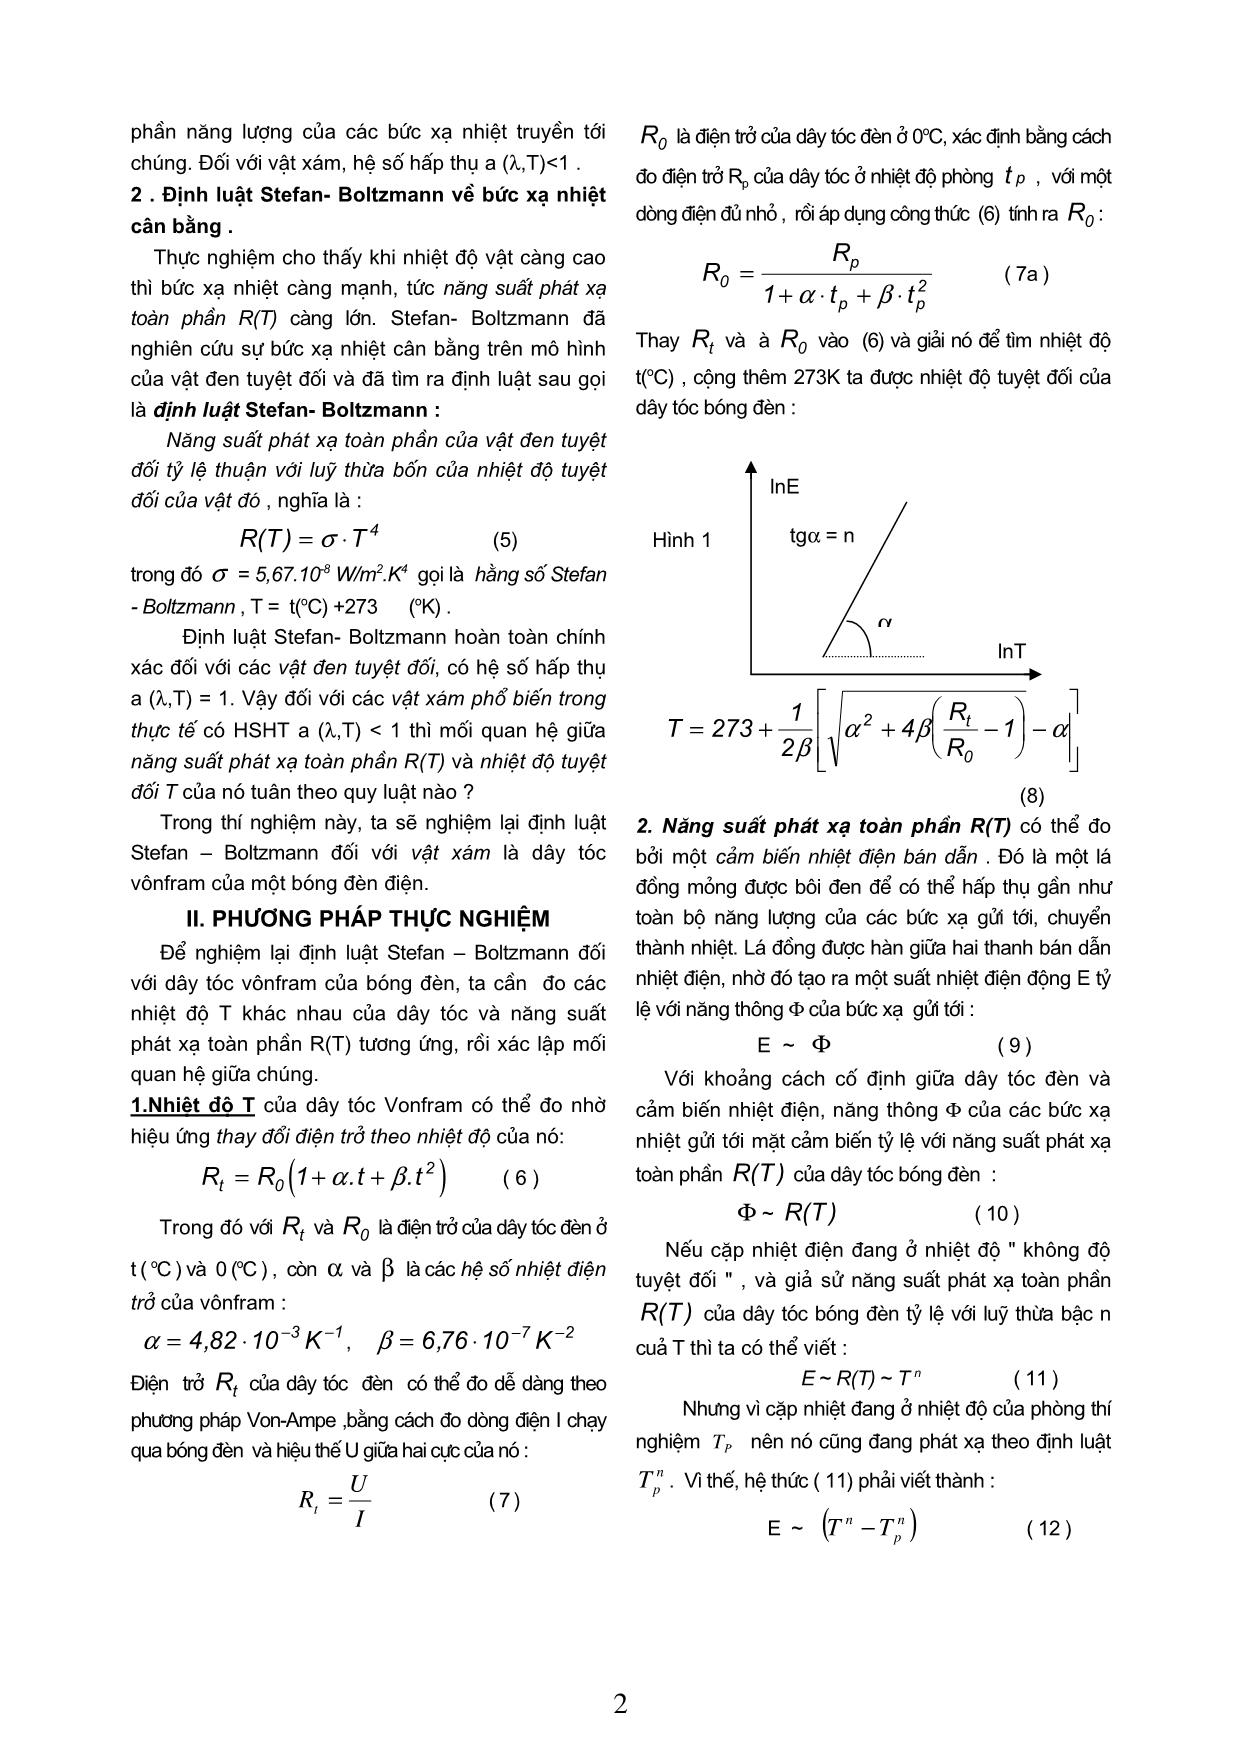 Khảo sát hiện tượng bức xạ nhiệt nghiệm định luật stefan - Boltzmann trang 2